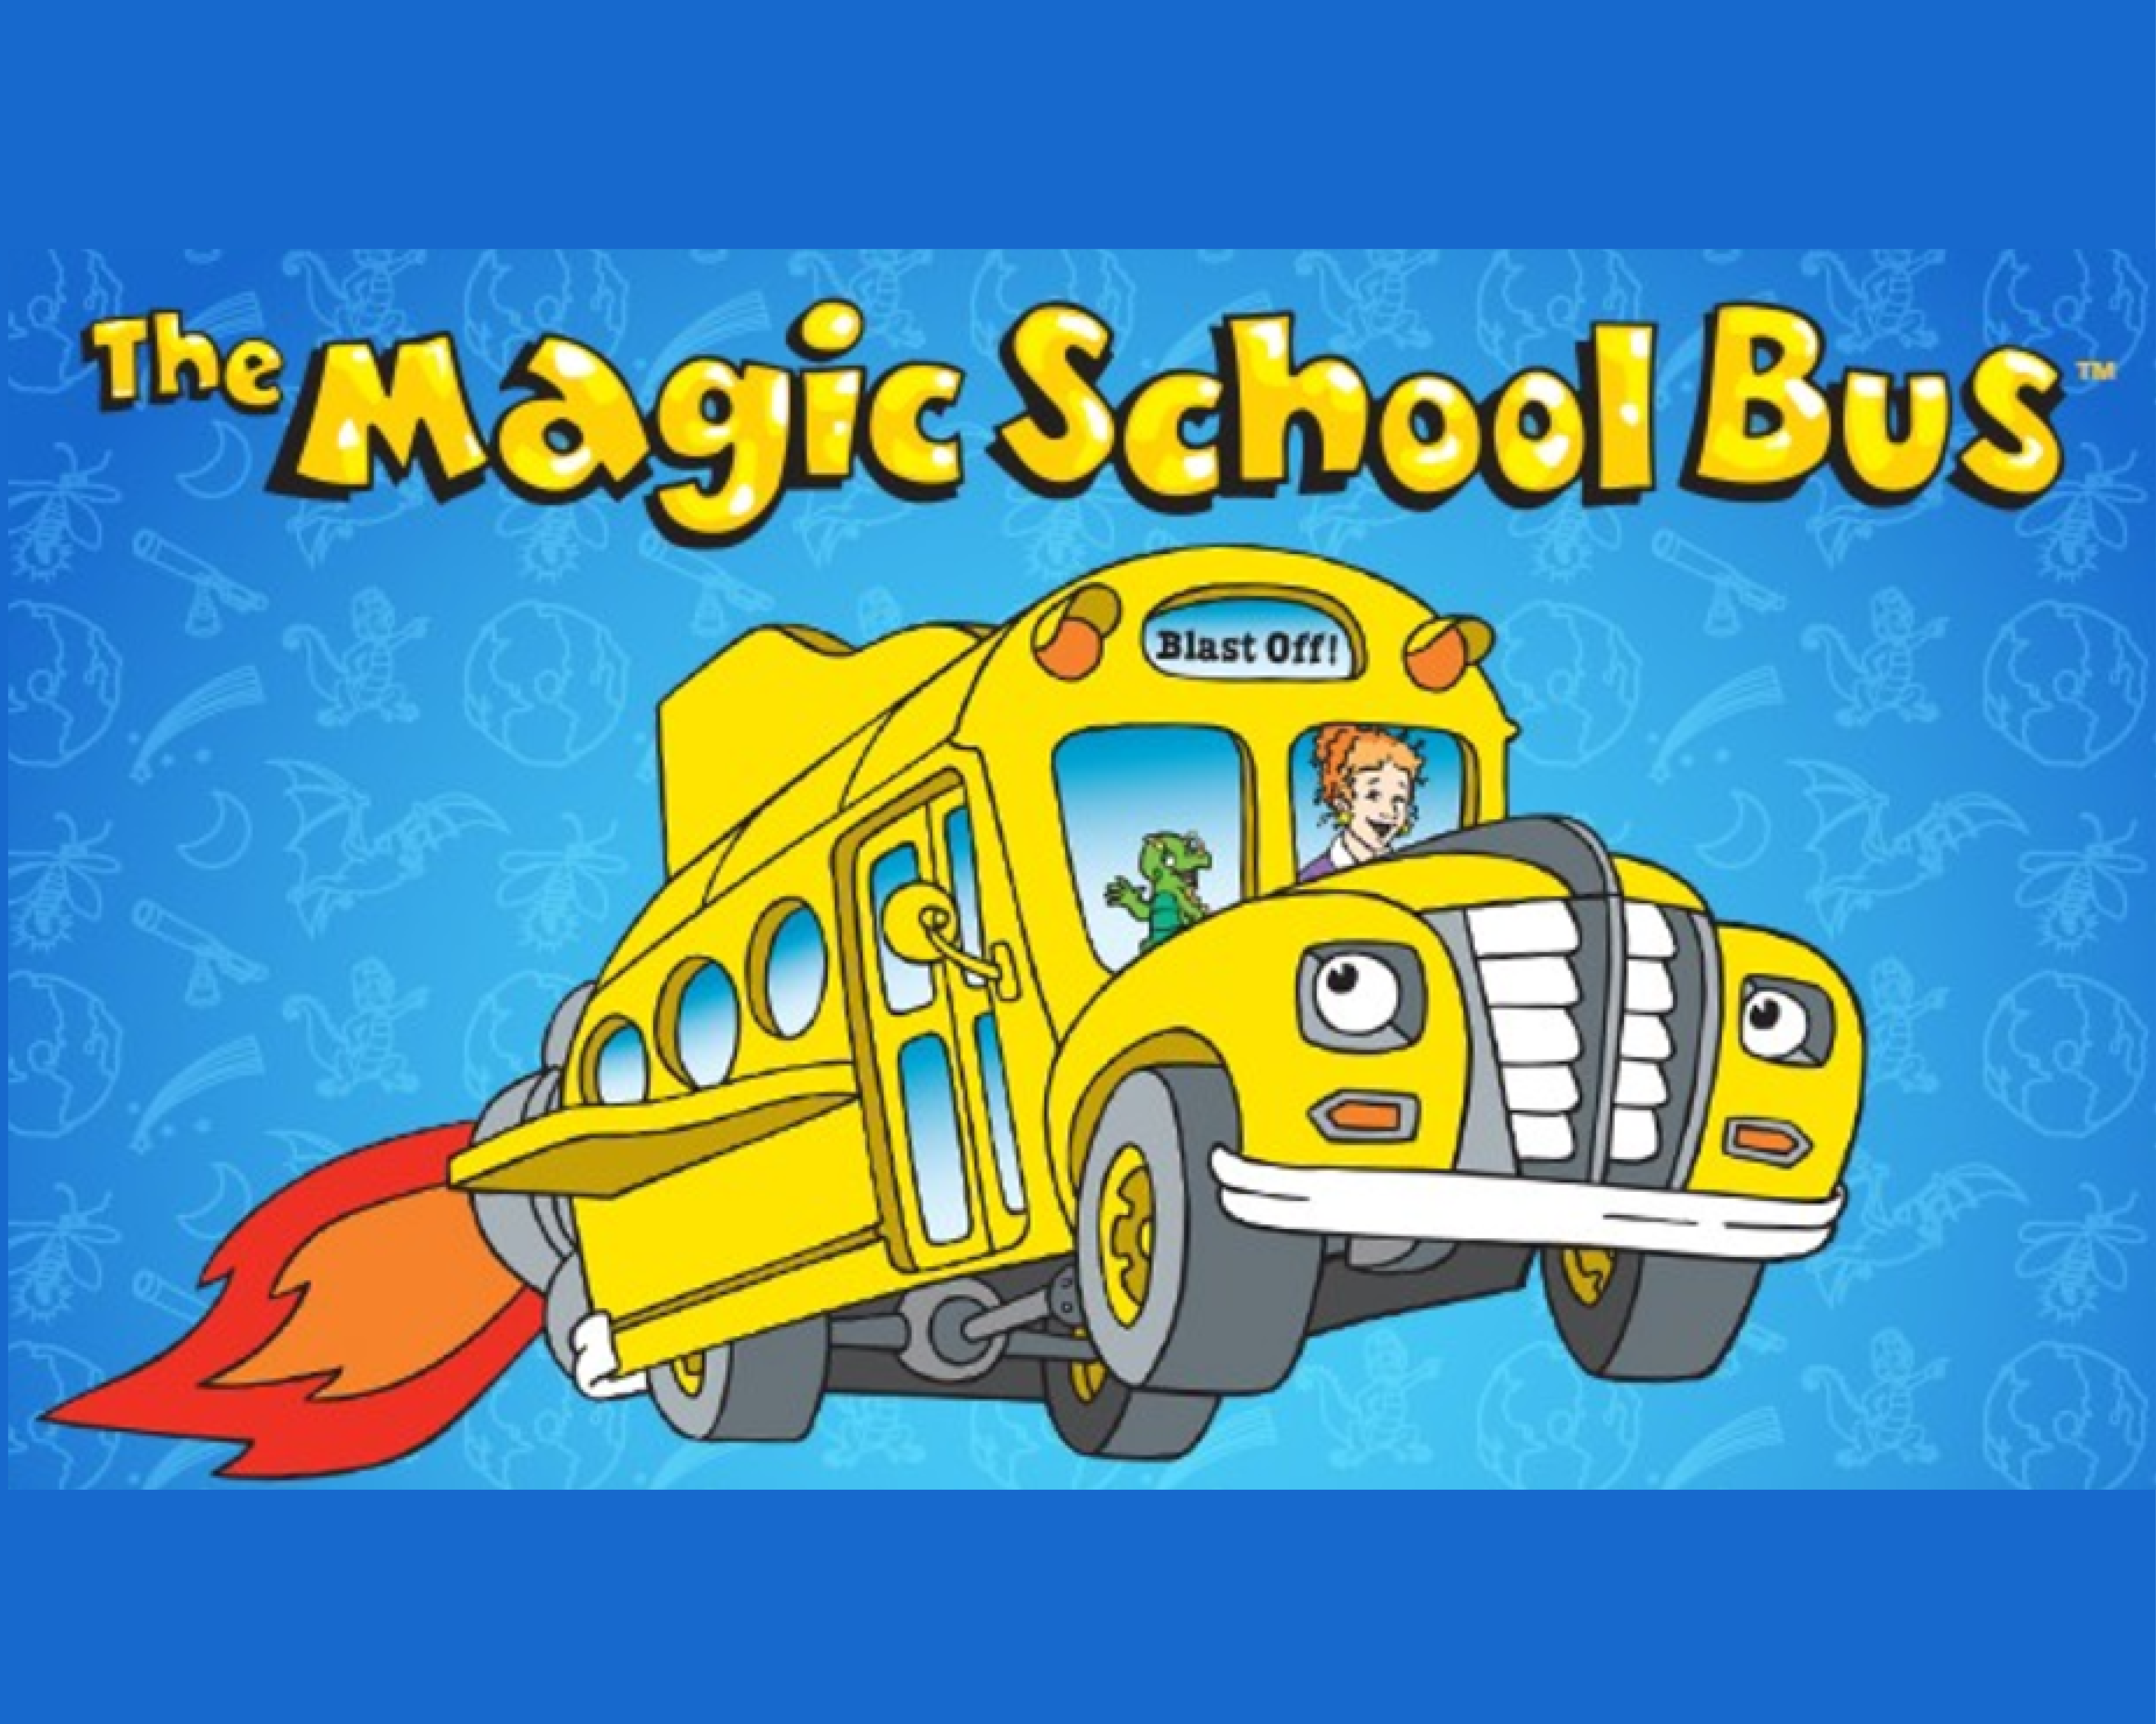 Magic school bus. Магический школьный автобус. The Magic School Bus.